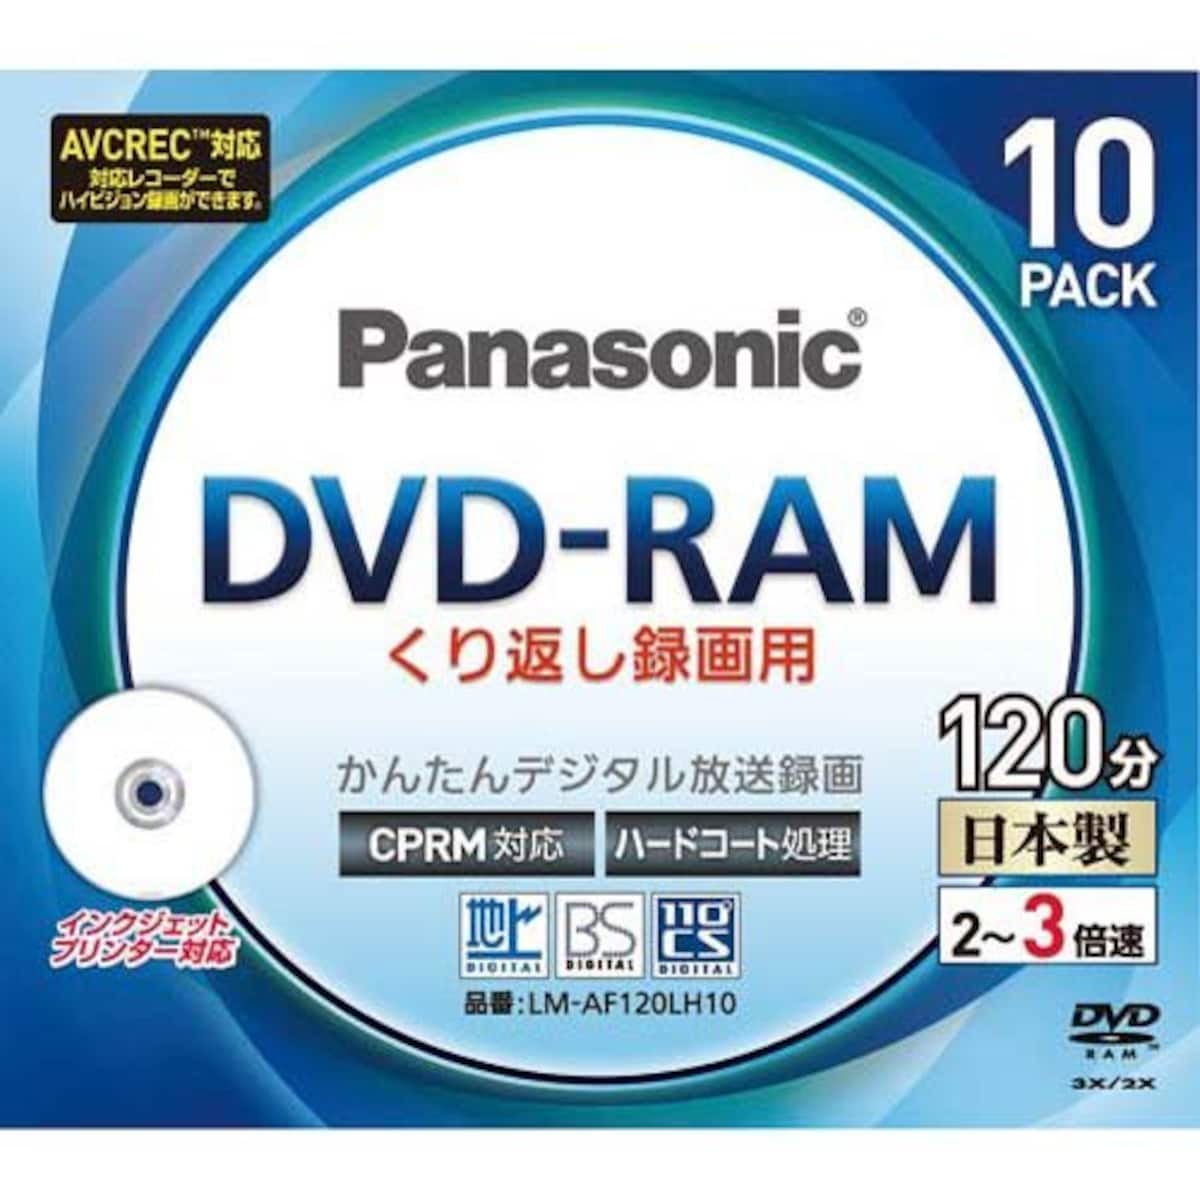 3倍速対応DVD-RAM プリンタブル10枚パック